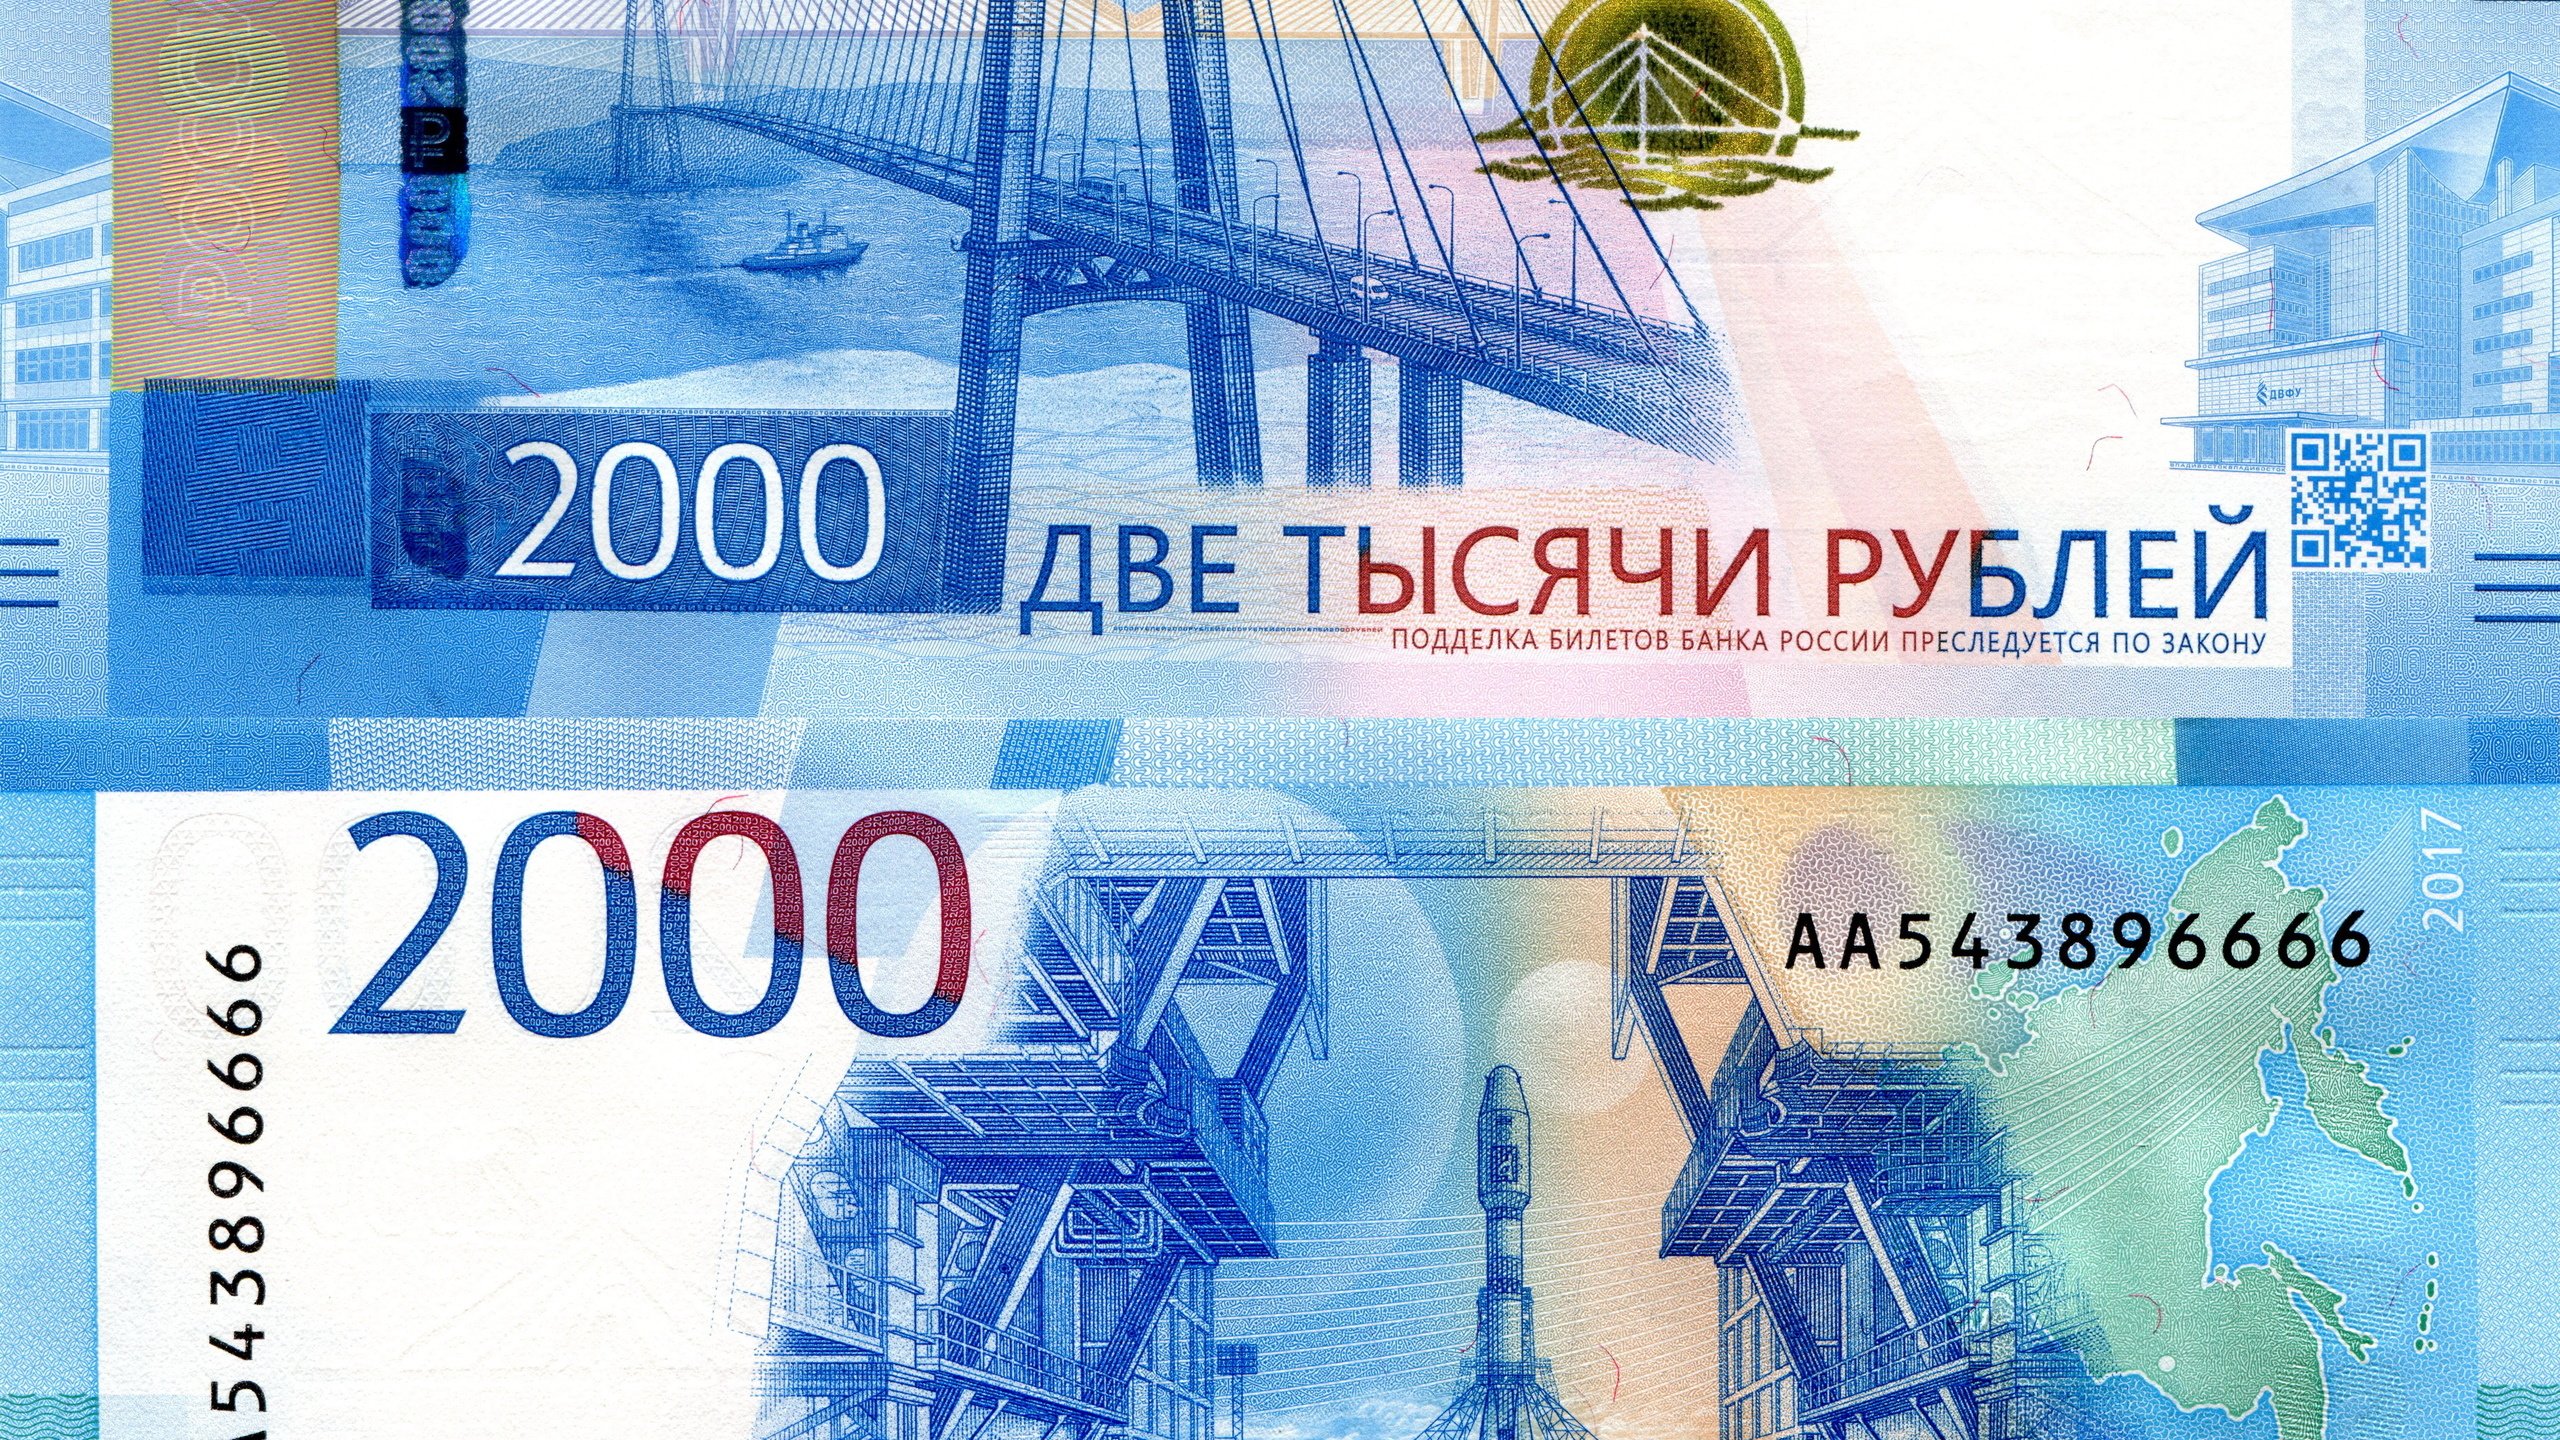 Как выглядит купюра 2000 рублей в россии фото